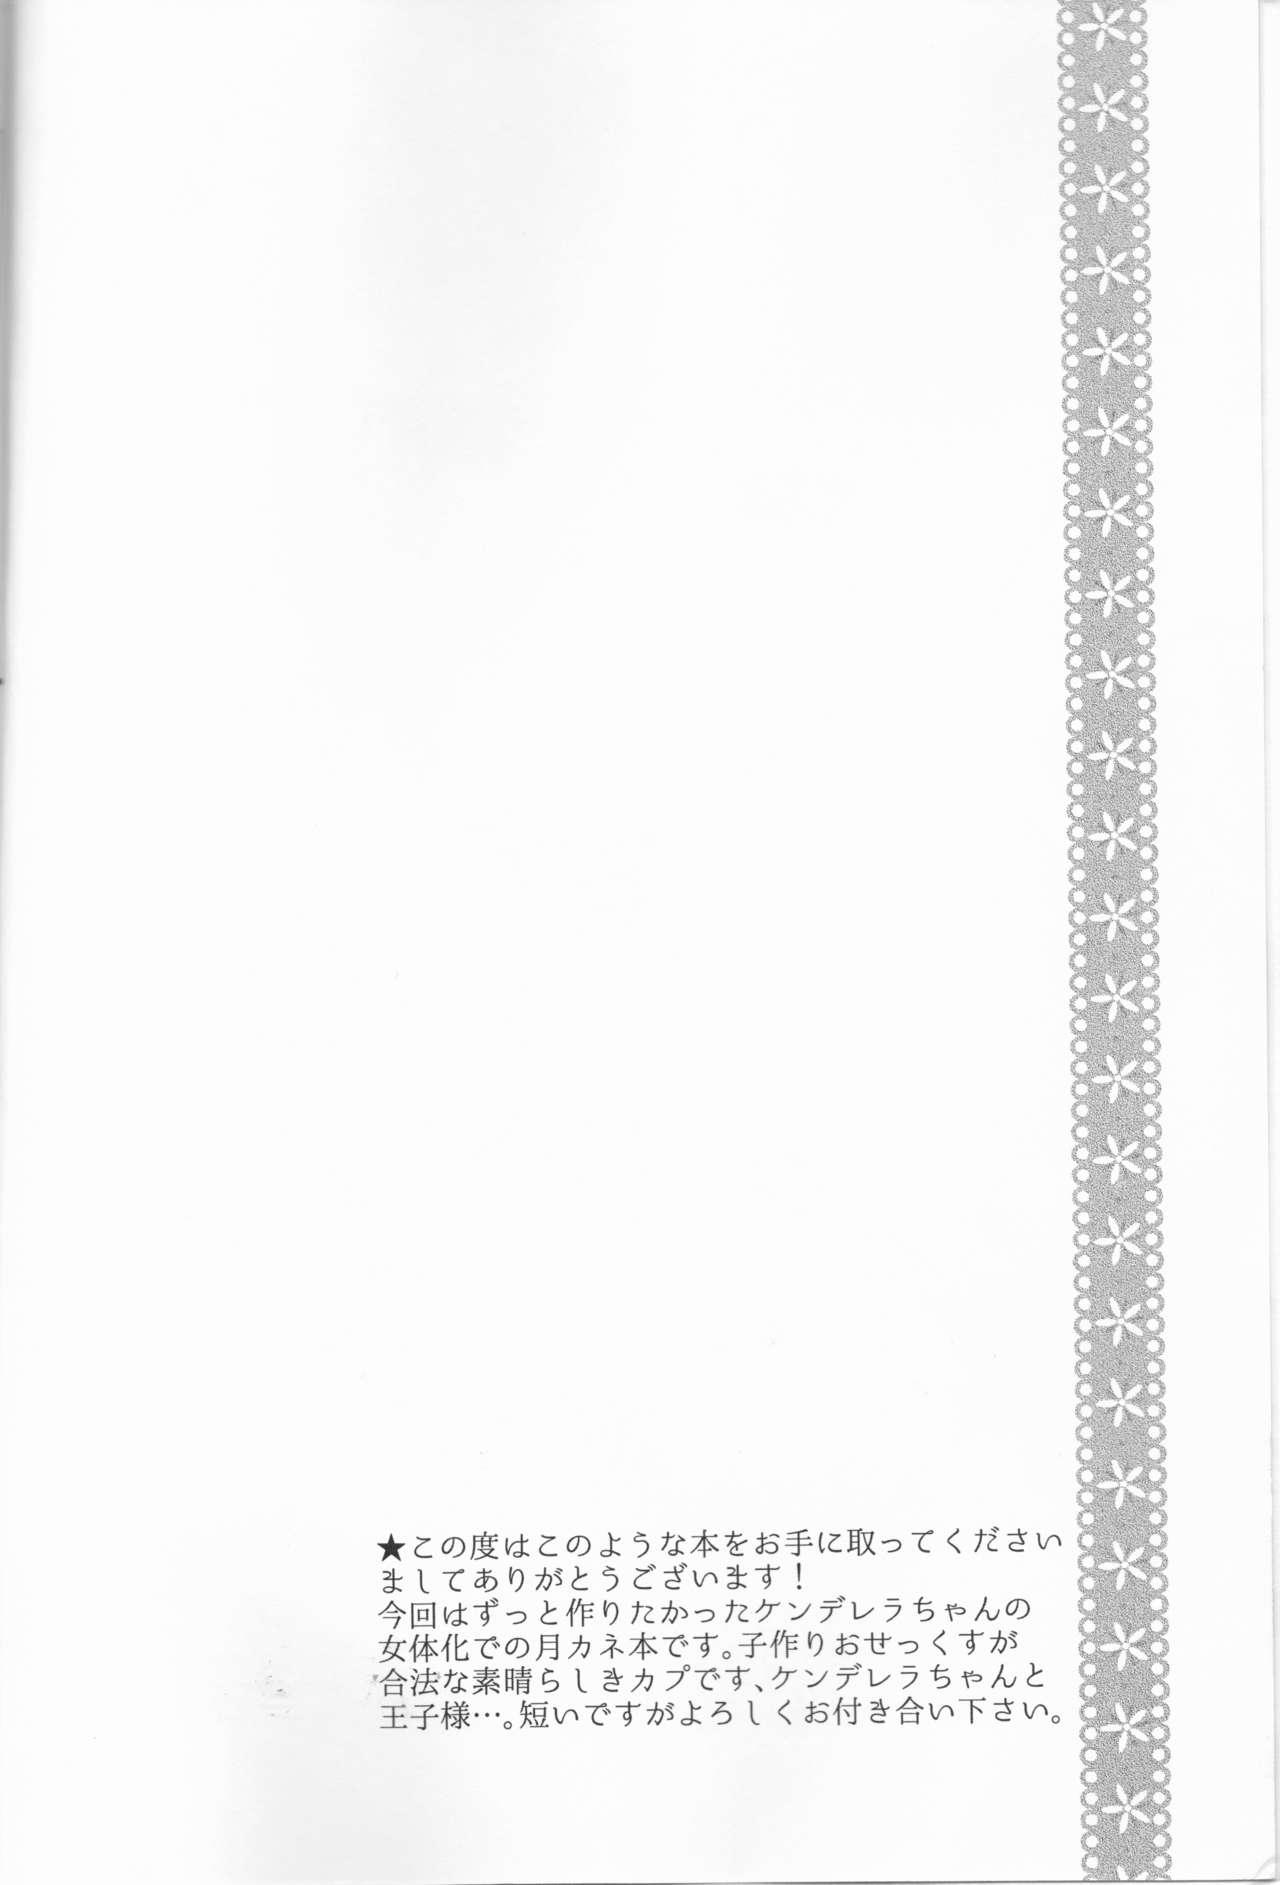 Casero Junketsu Mariage - Tokyo ghoul Best - Page 3